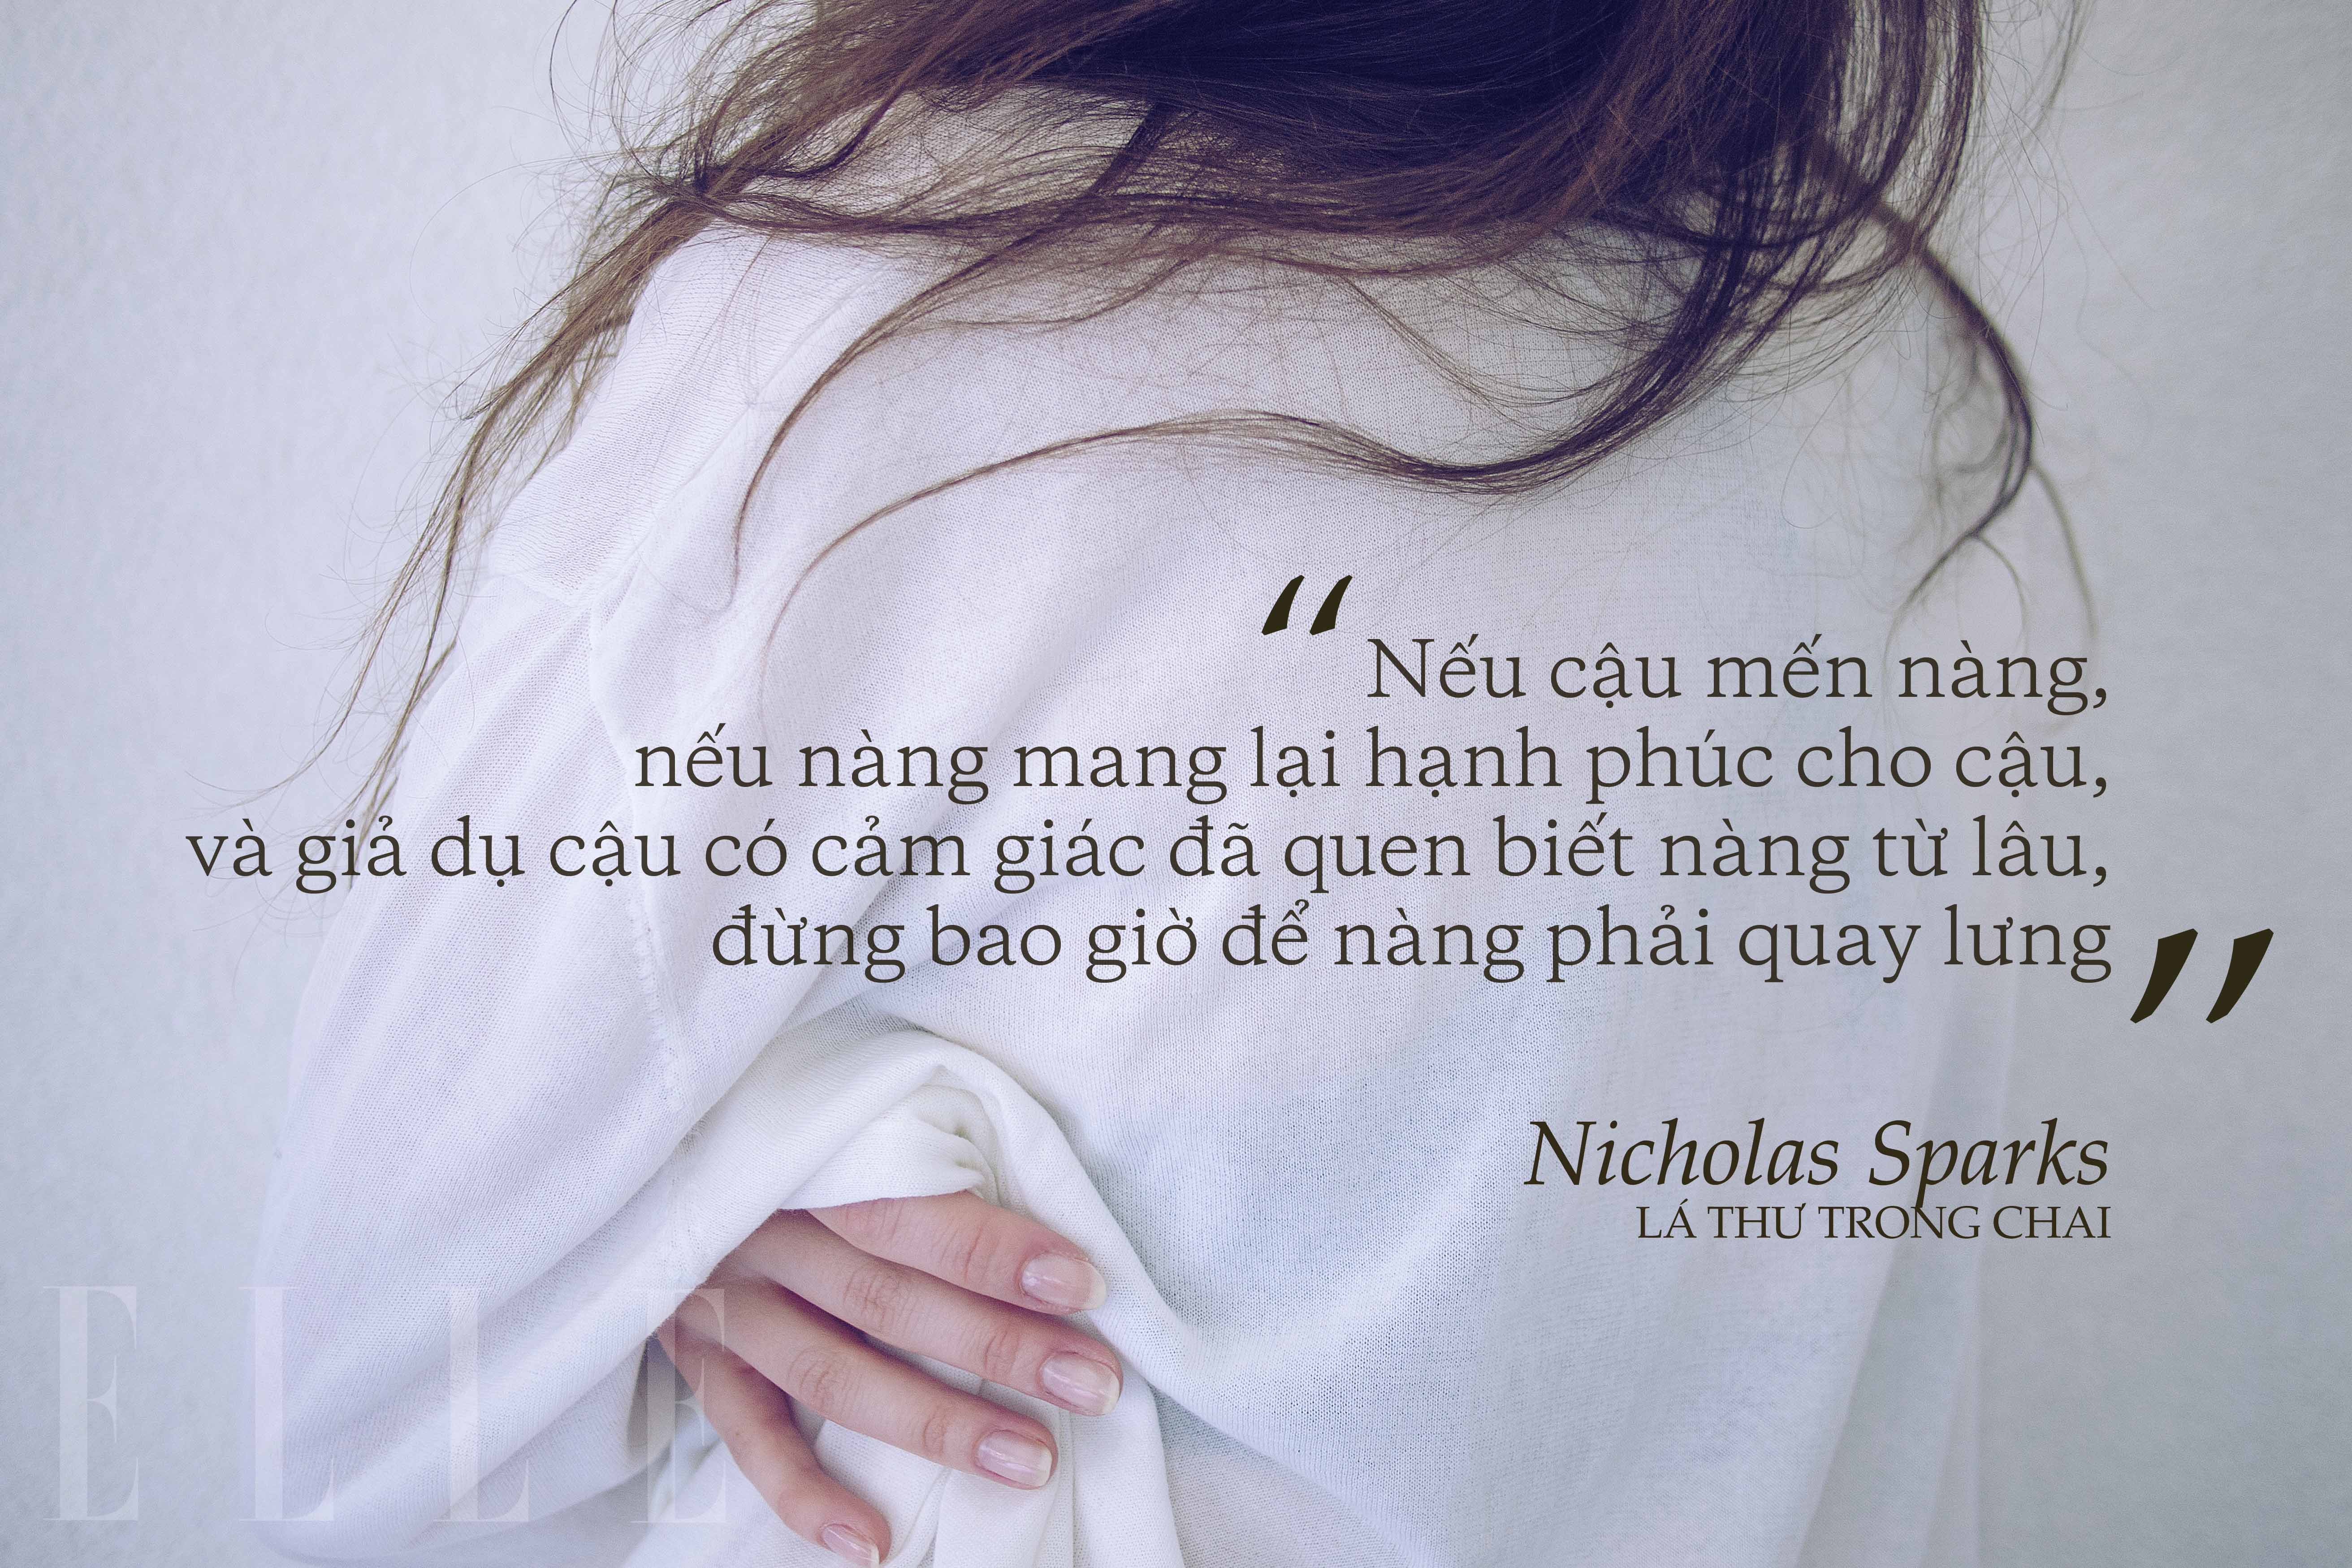 Nicholas Sparks 2